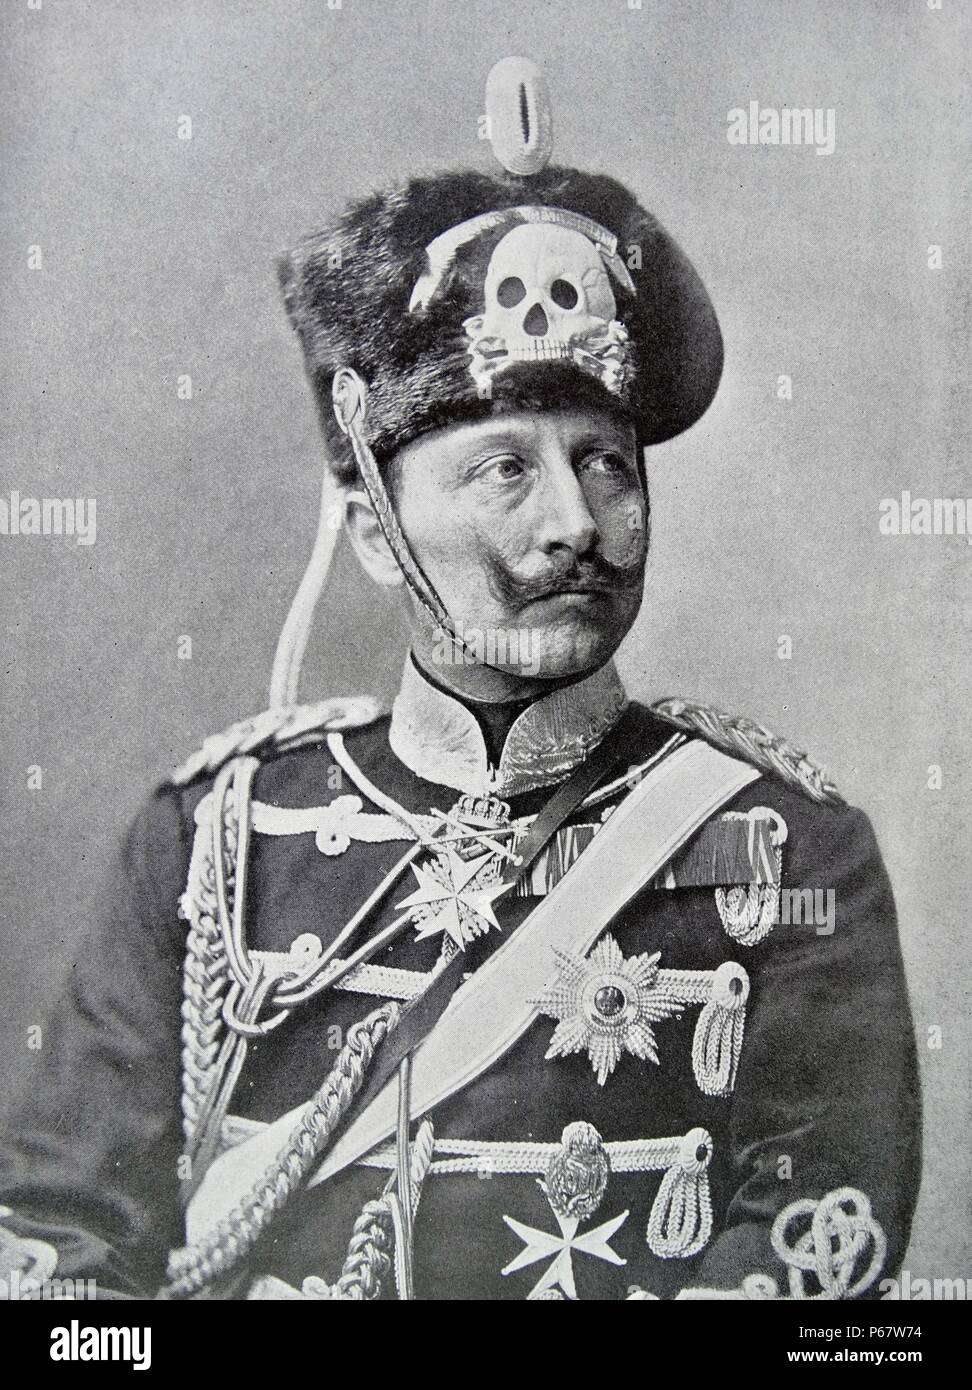 Guillaume II ou William II ; 1859 - 4 juin 1941) fut le dernier empereur allemand et roi de Prusse), jugeant l'Empire allemand et du royaume de Prusse, du 15 juin 1888 au 9 novembre 1918. Banque D'Images